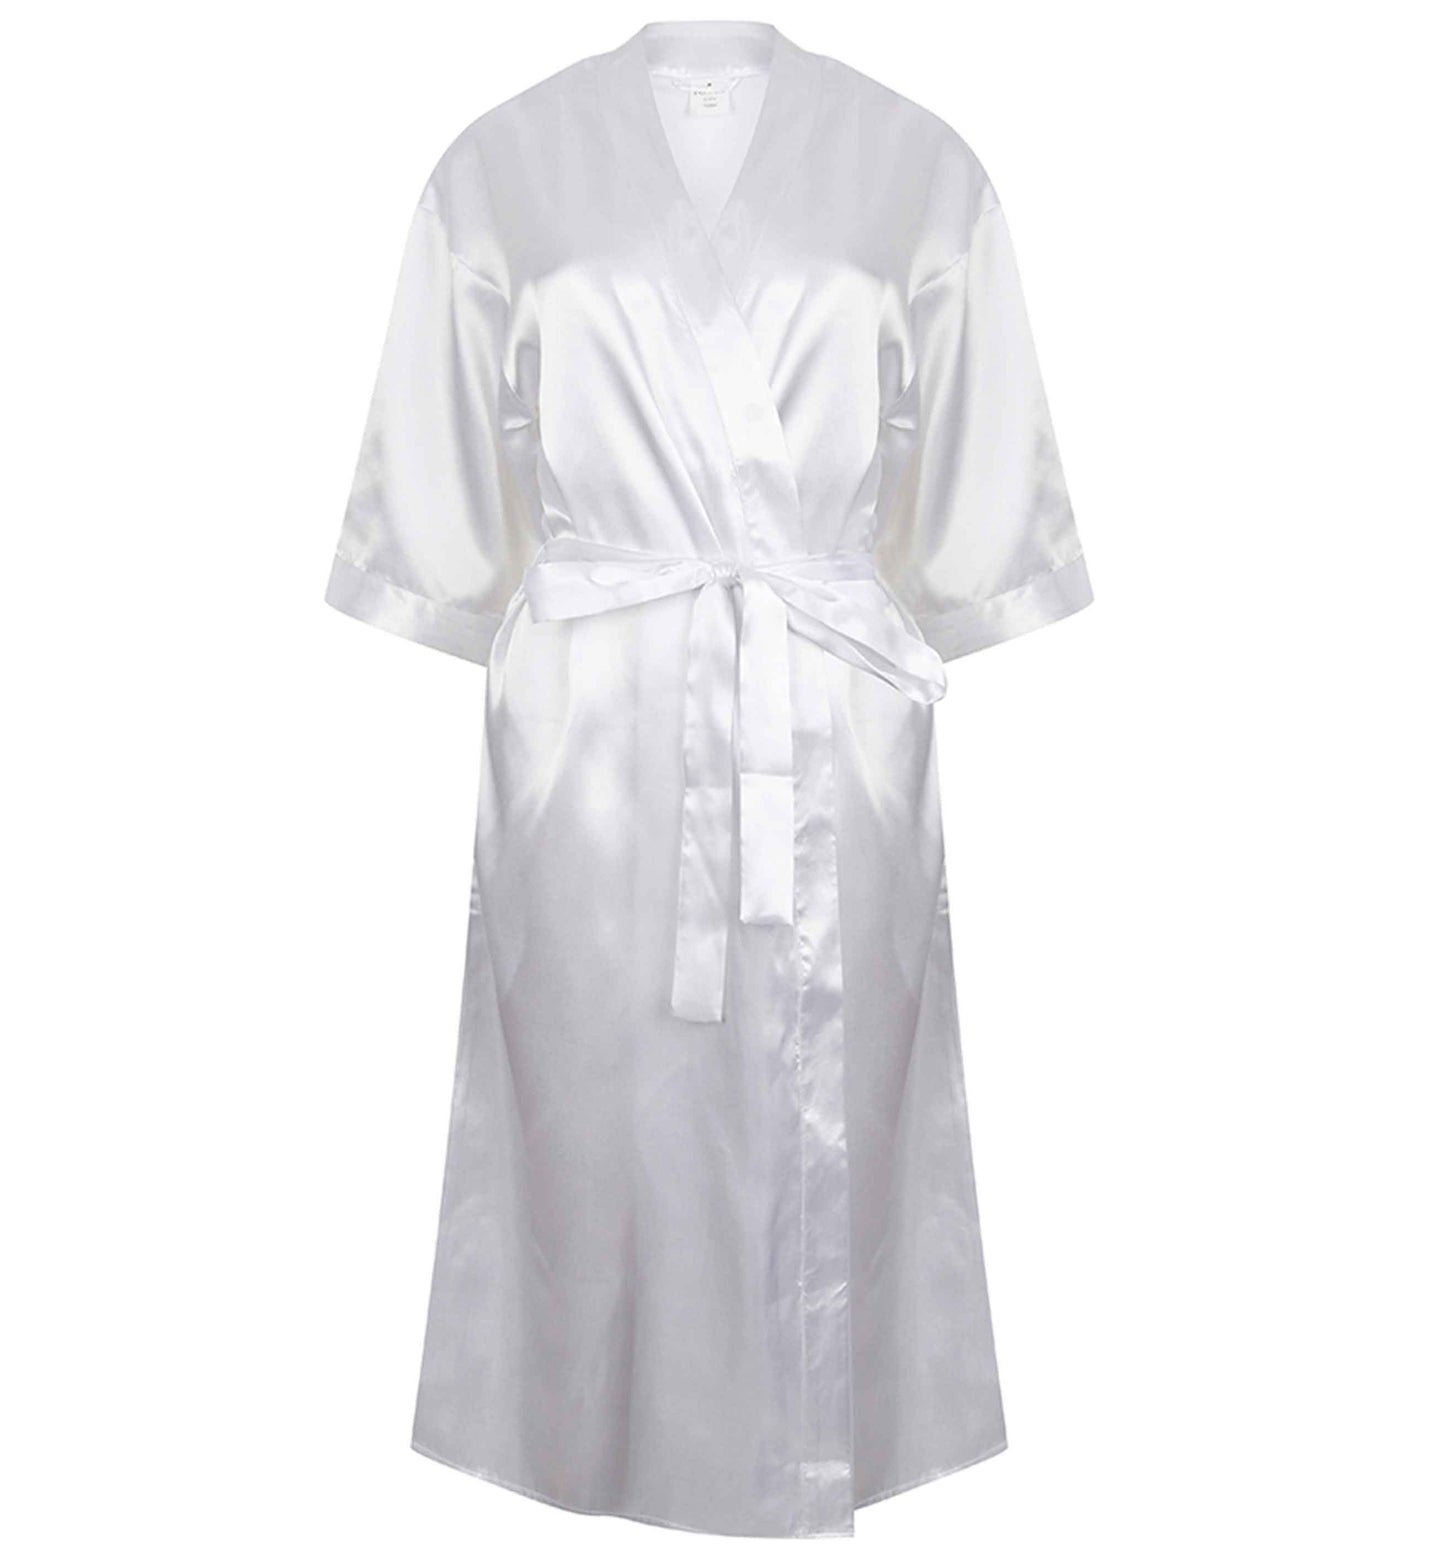 I'm getting mer-ied! Metallic silver | 8-18 | Kimono style satin robe | Ladies dressing gown